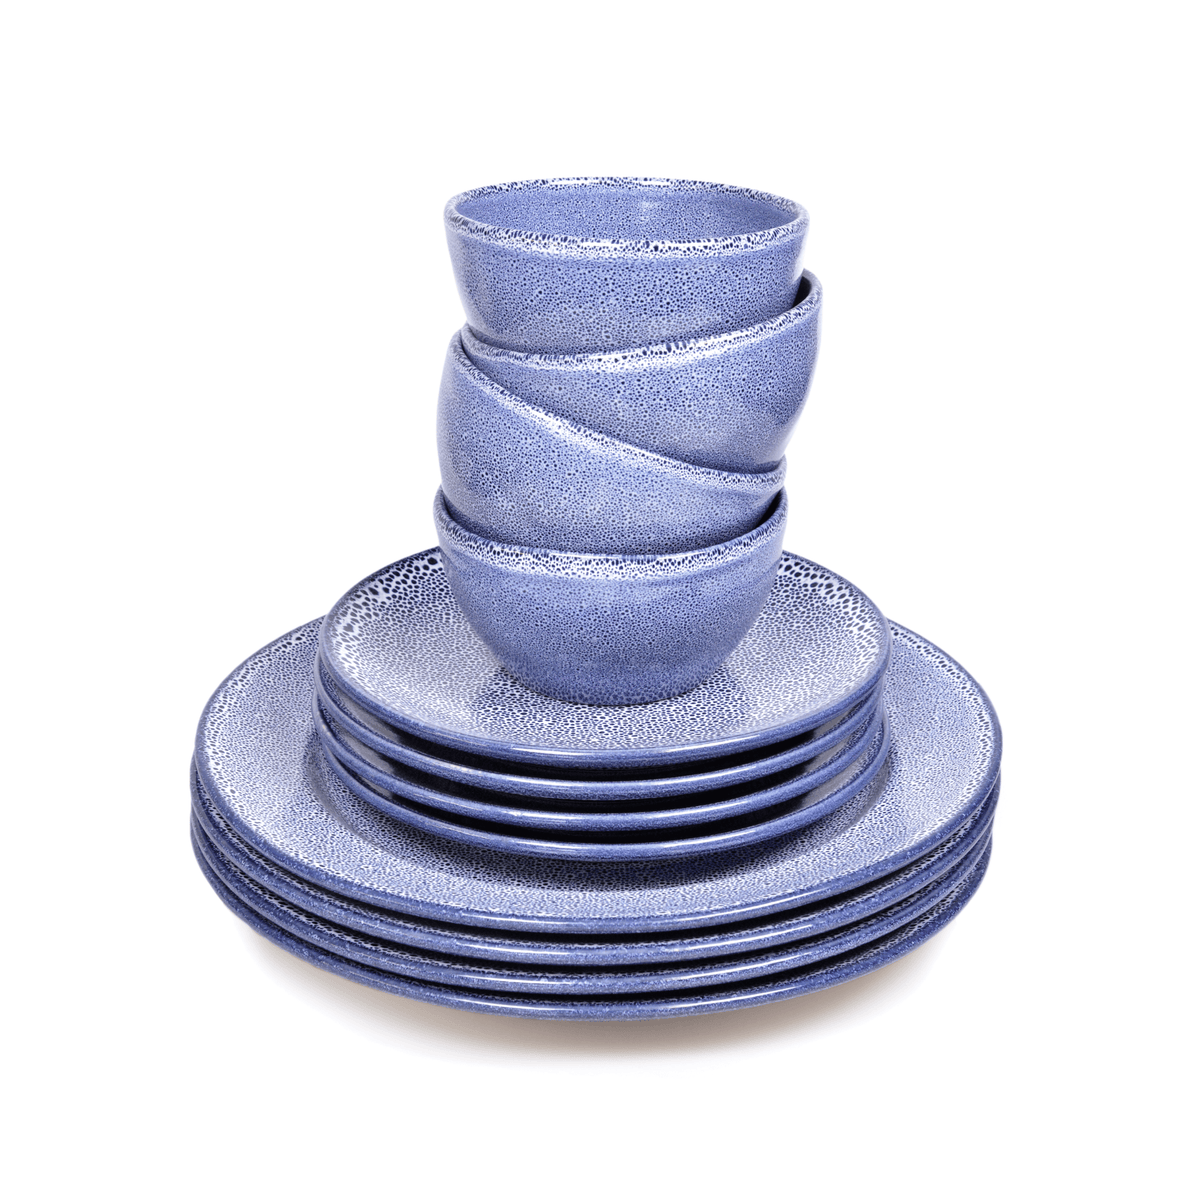 Premium Sapphire Blue Speckled 12 Piece Dinnerware Set - BESPOKE77